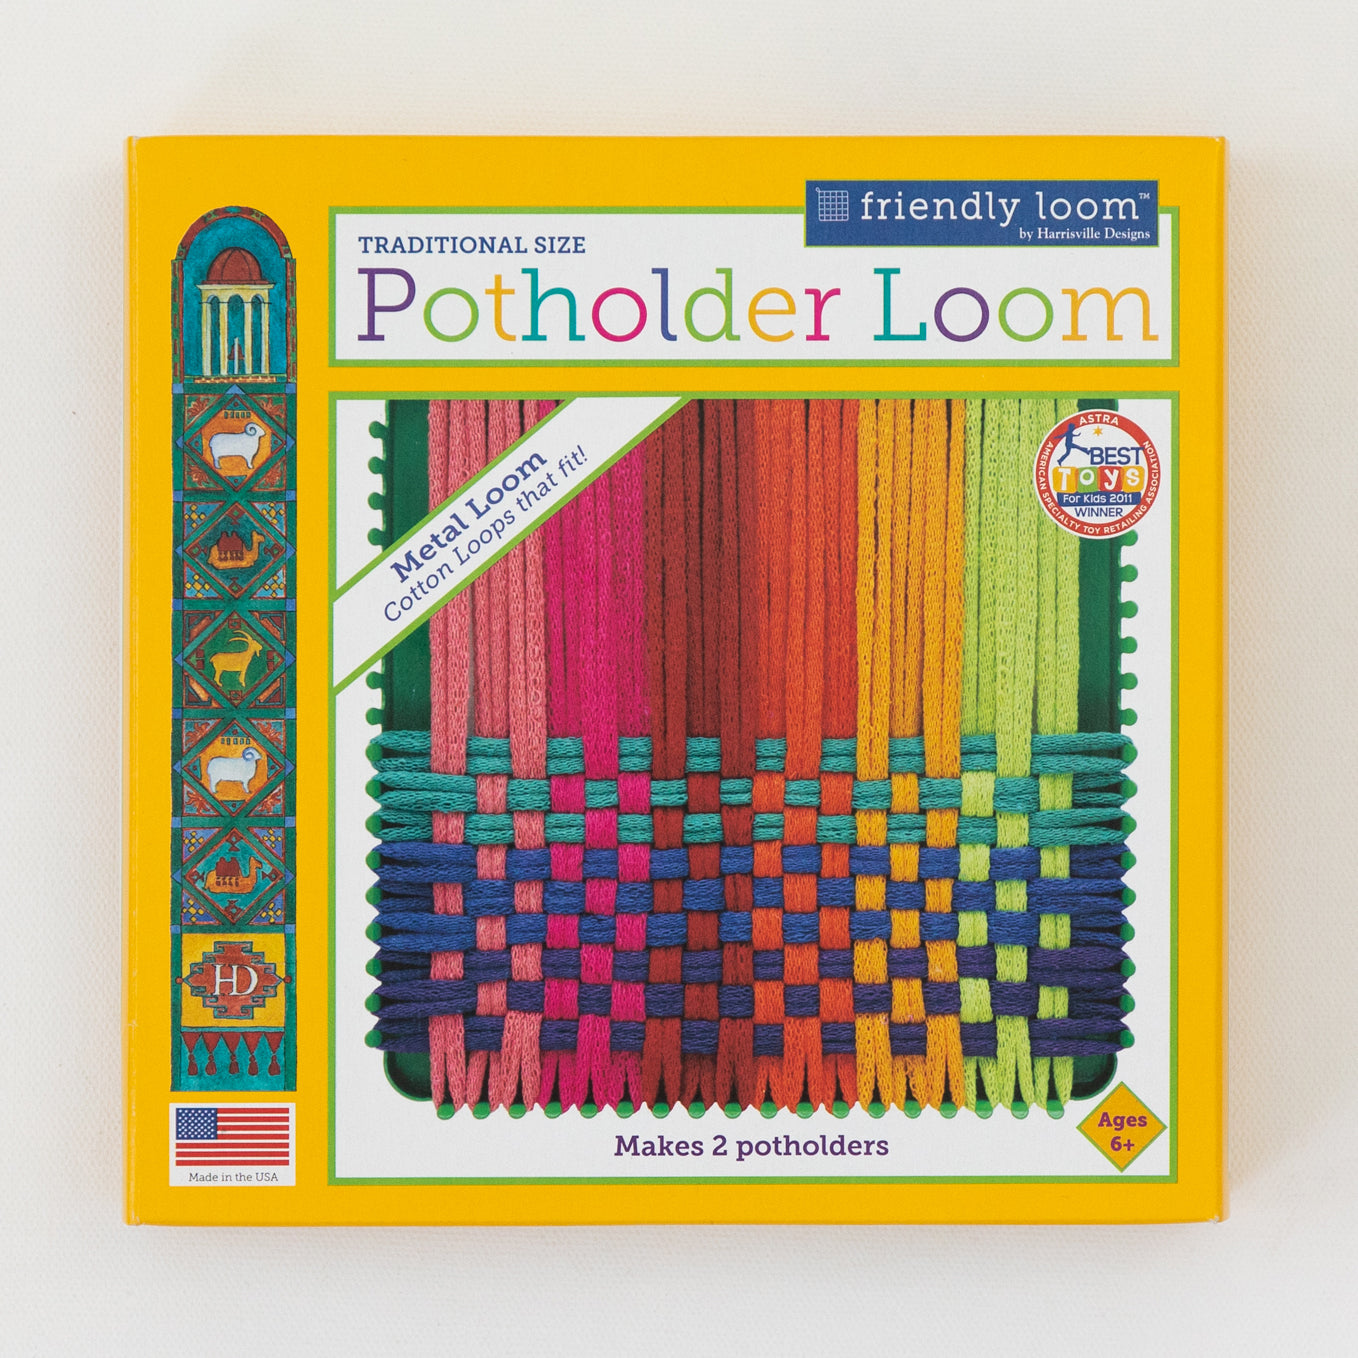 Potholder Loom Kit (traditional size) – Handiwork